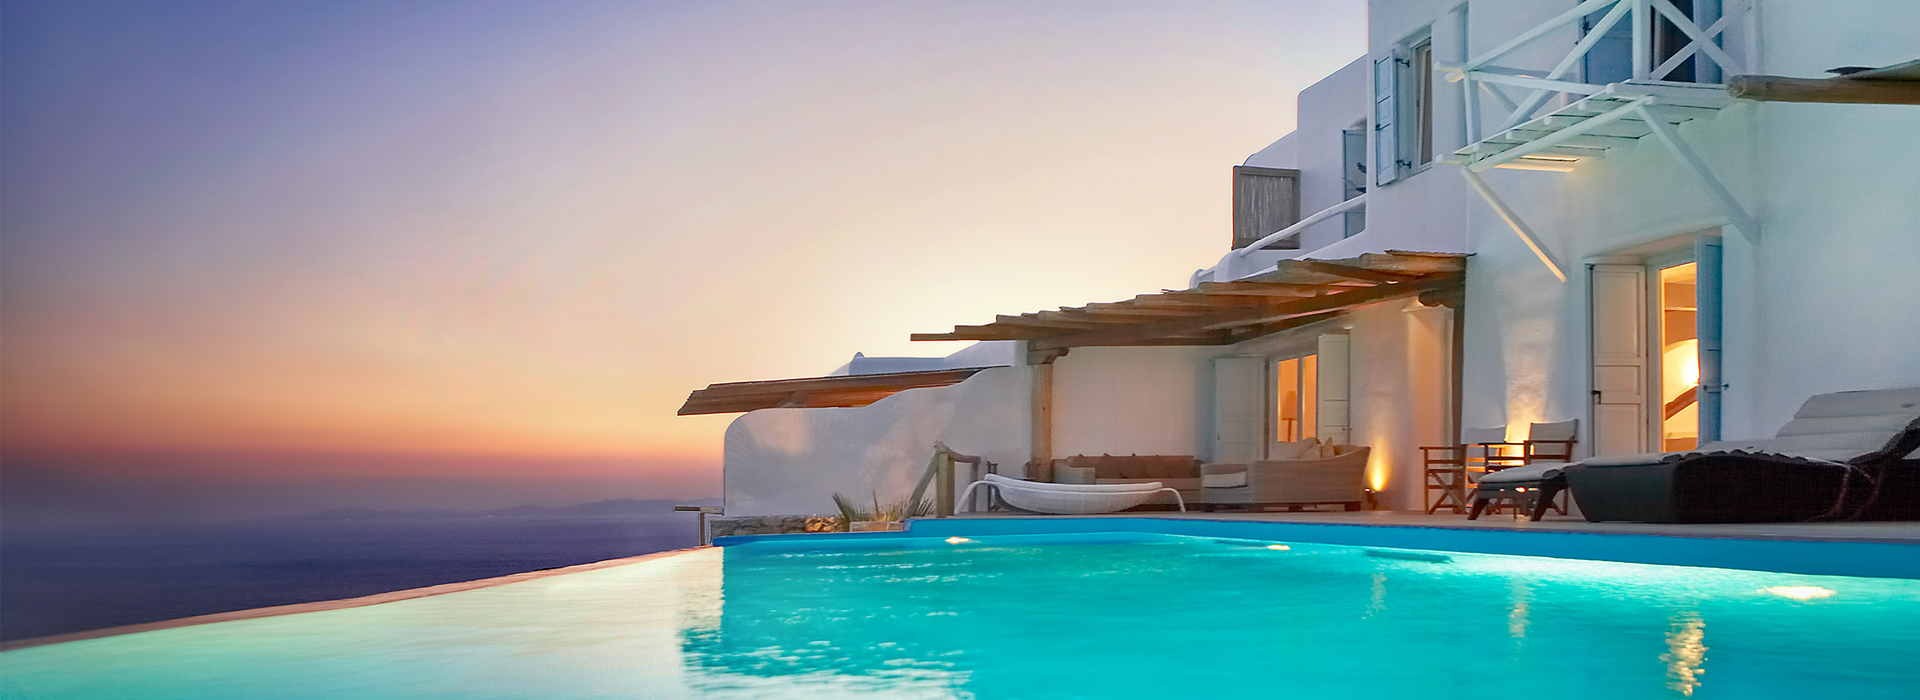 villas rentals greece